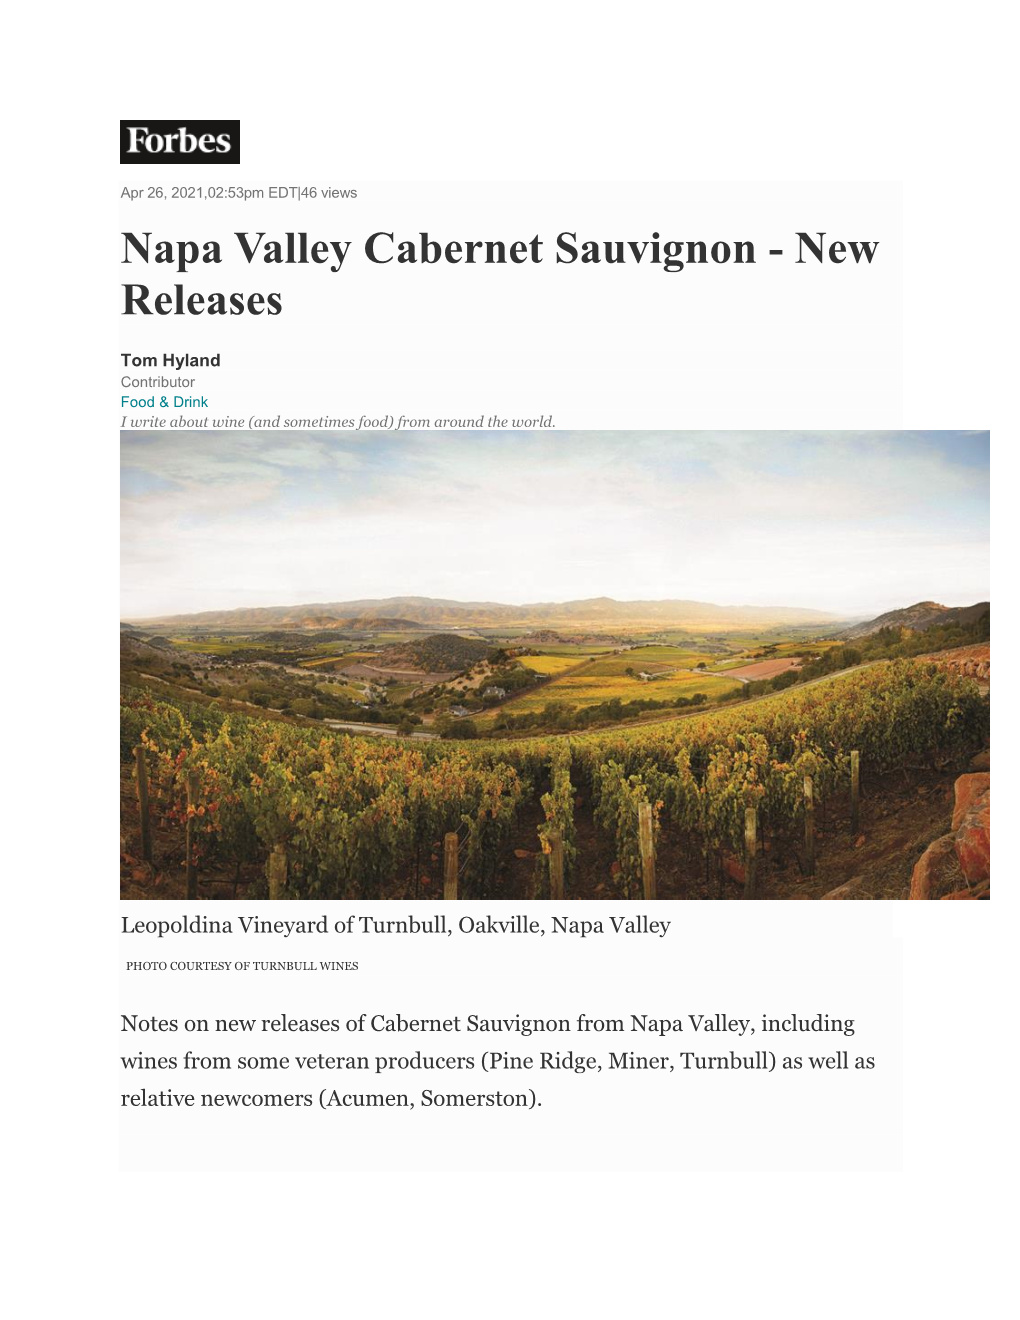 Napa Valley Cabernet Sauvignon - New Releases